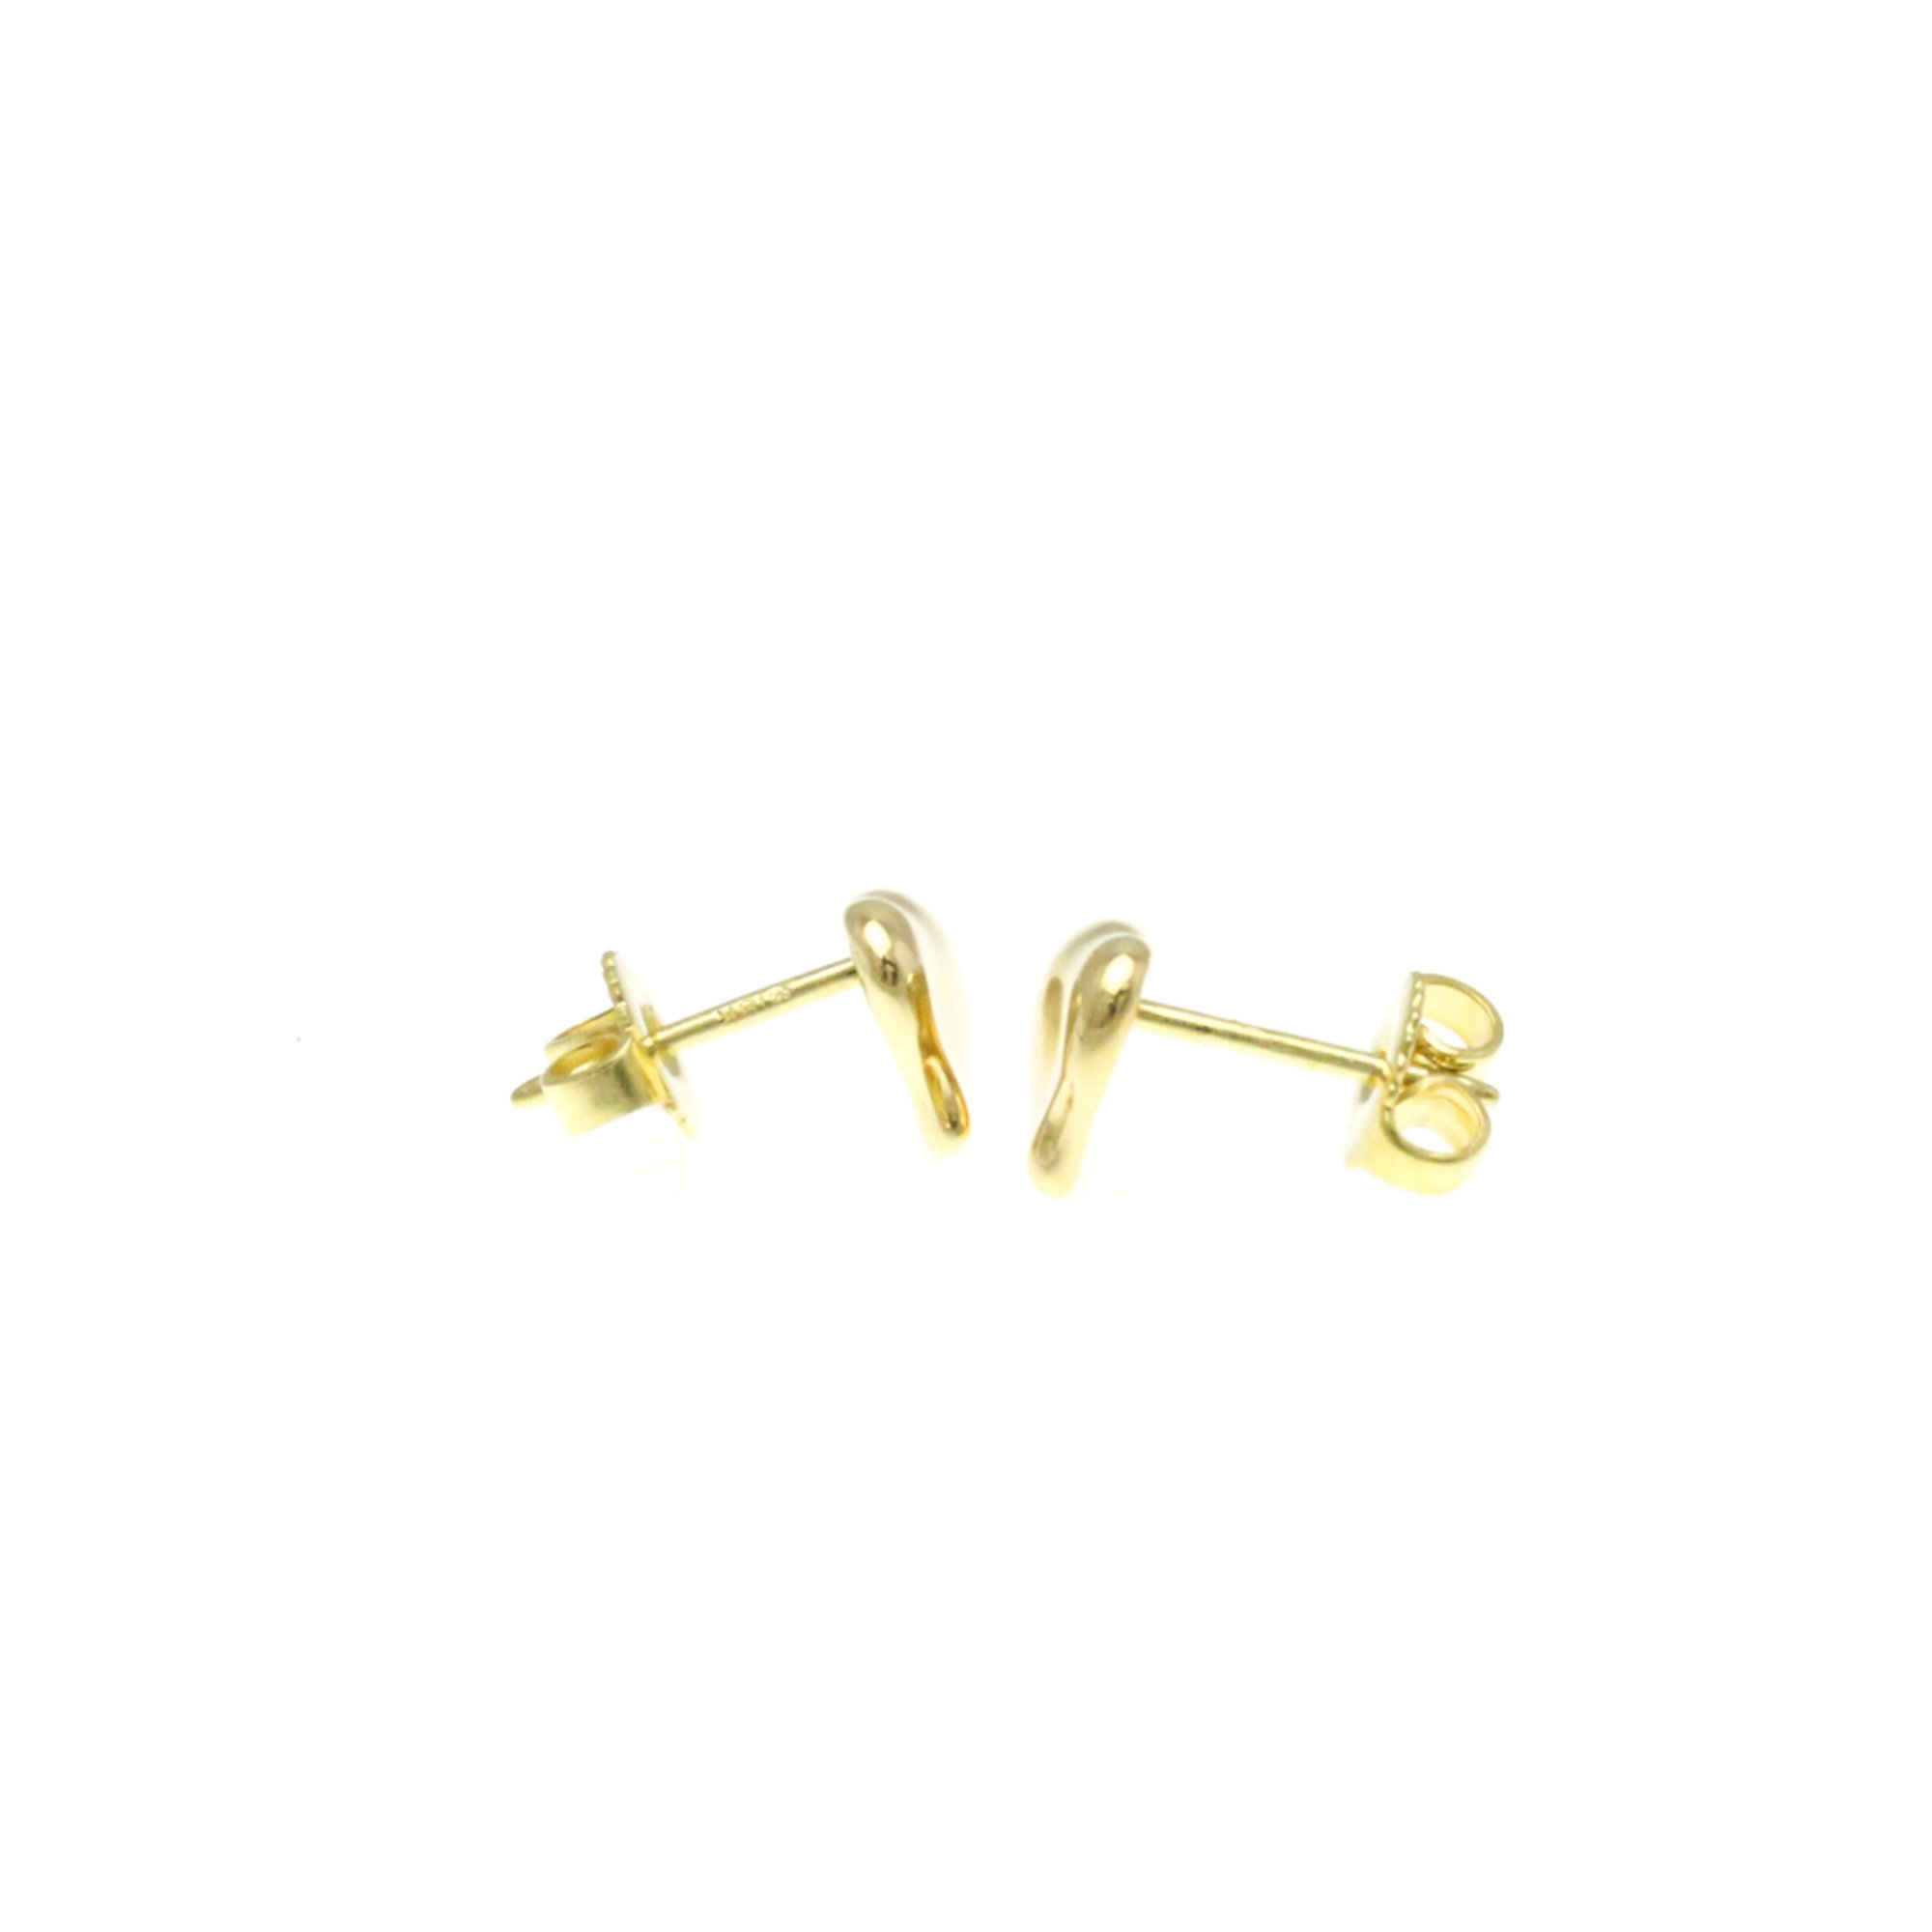 Tiffany Full Heart Earrings Yellow Gold (18K) Stud Earrings Gold BF570581